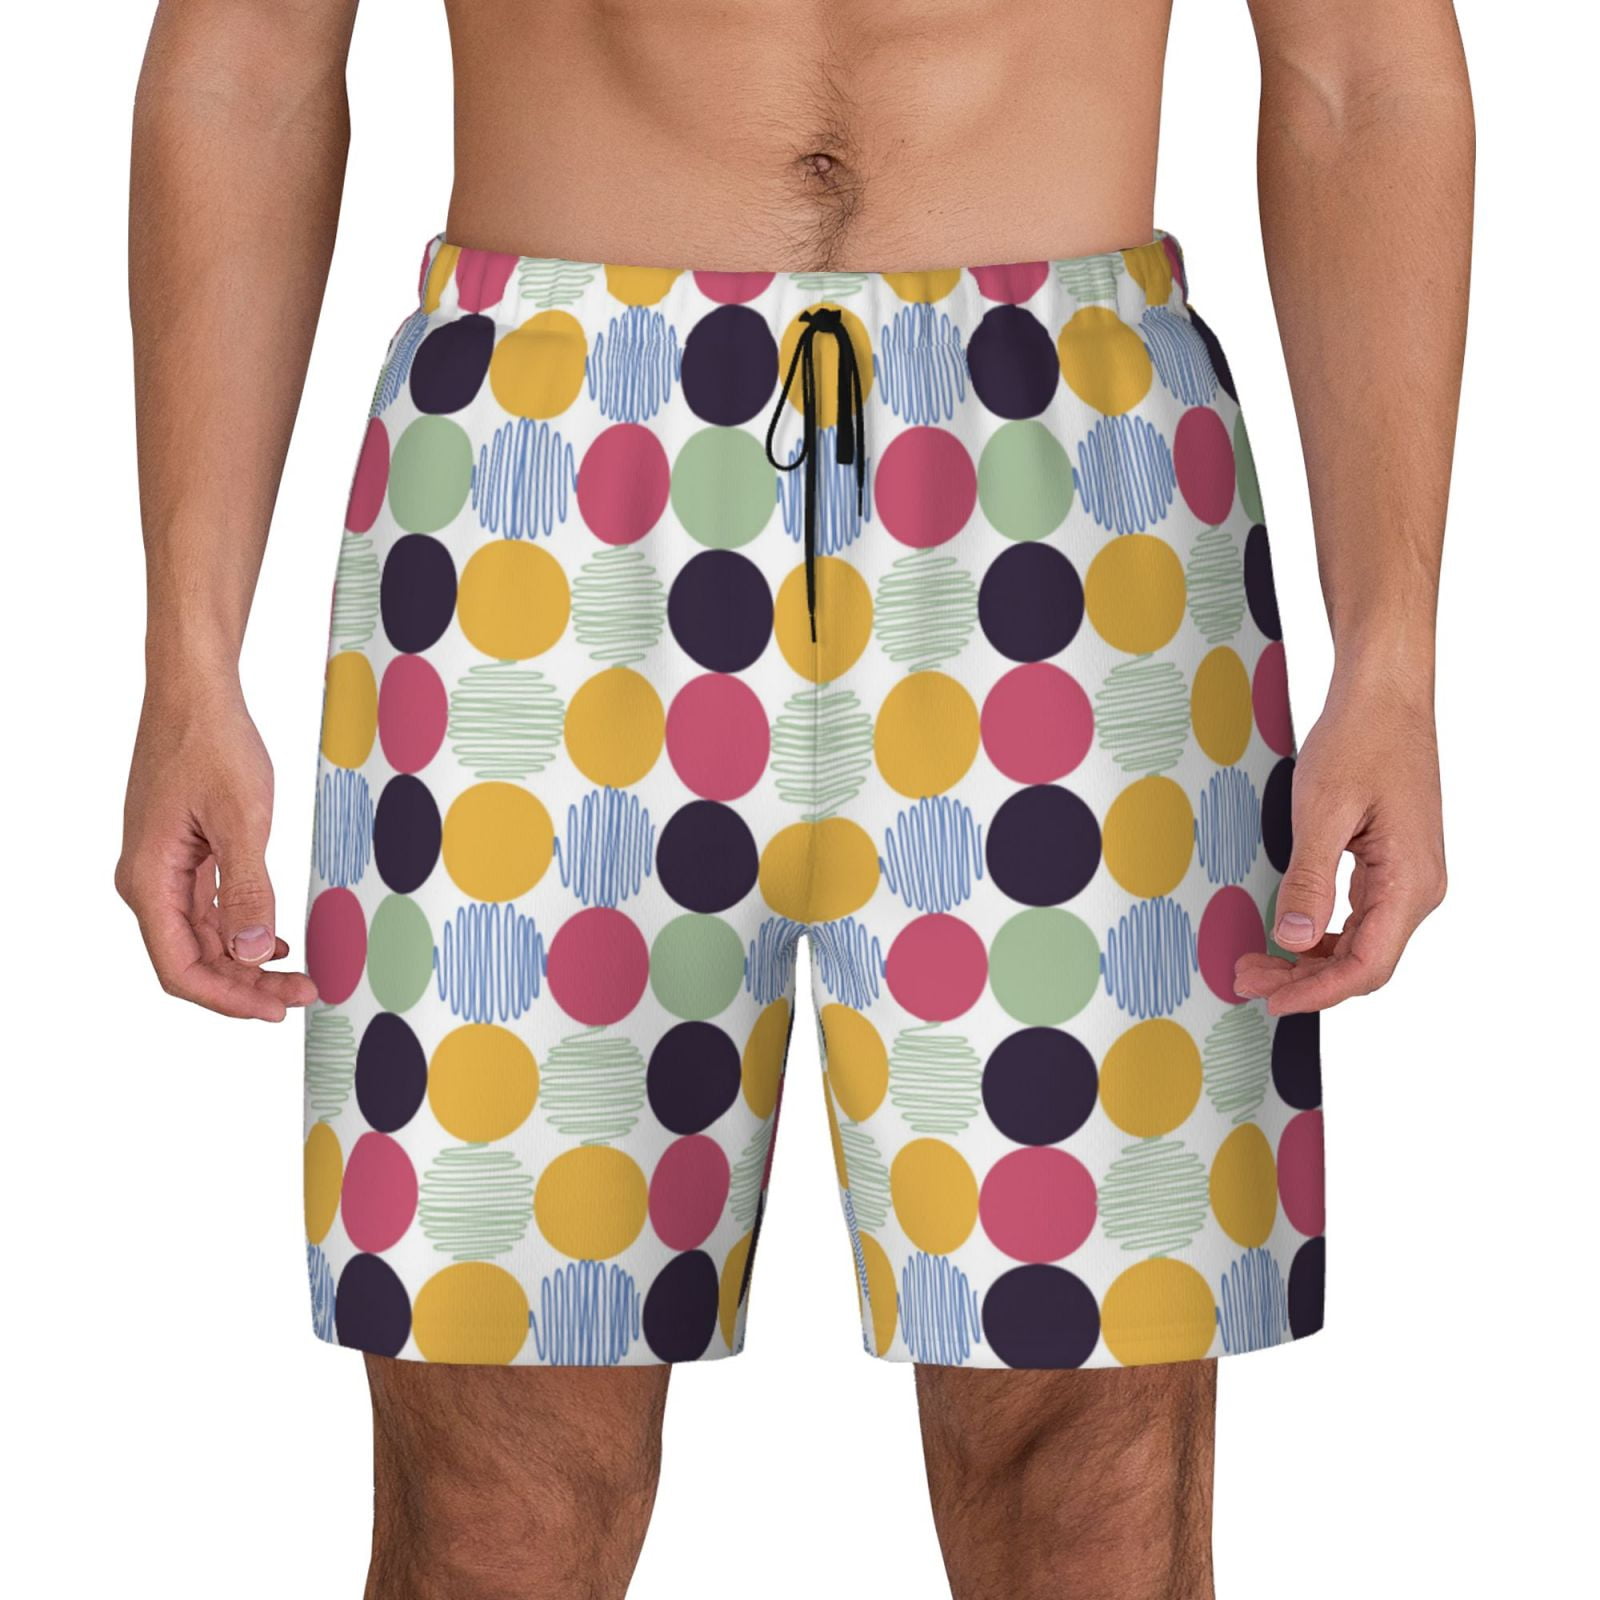 Balery Polka Dot Mens Swim Trunks Swim Shorts for Men Quick Dry Inseam ...